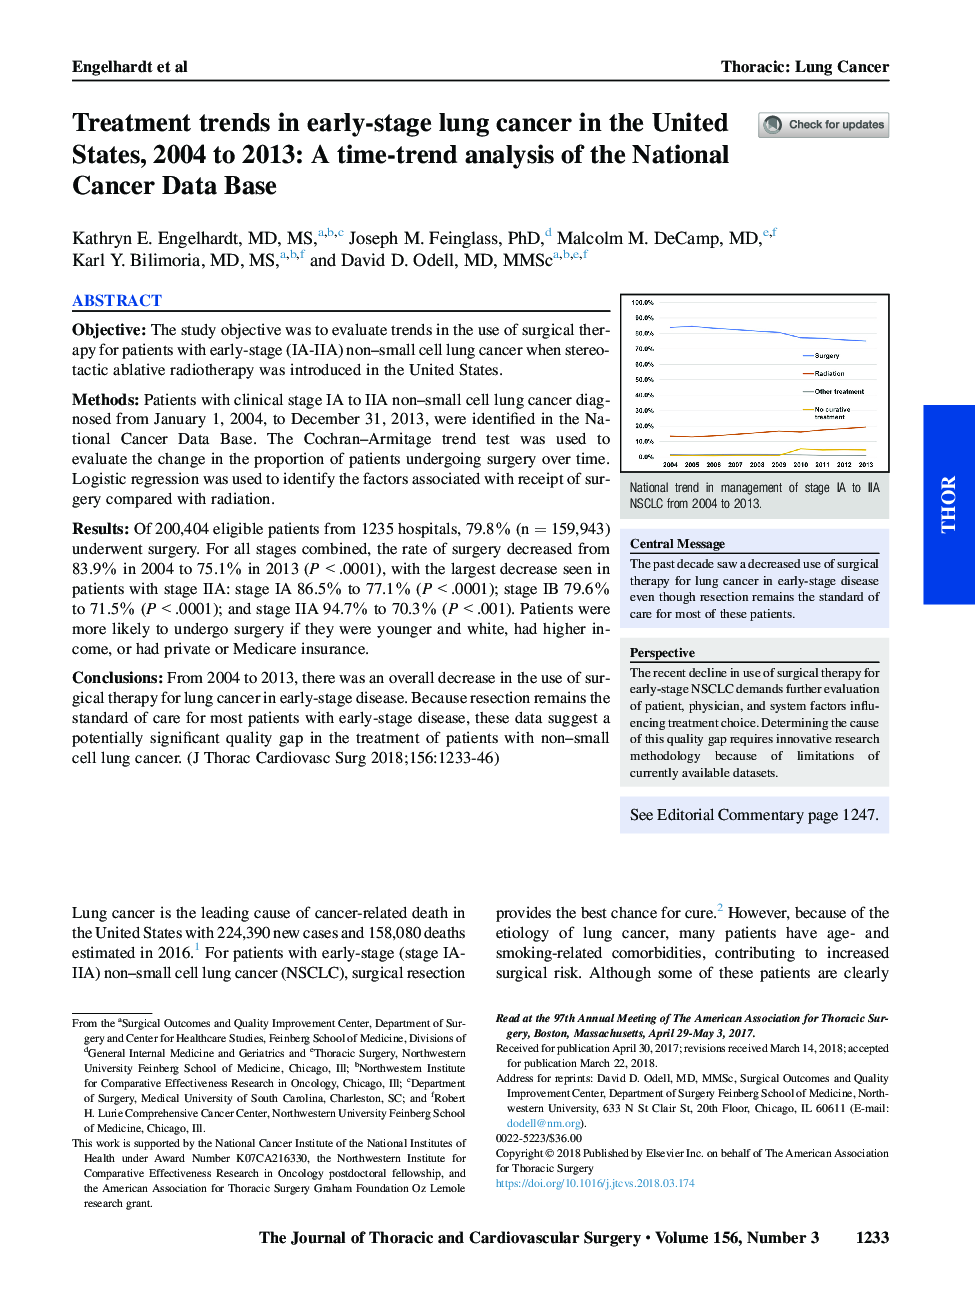 روند درمان در مرحله اول سرطان ریه در ایالات متحده، 2004 تا 2013: تجزیه و تحلیل روند زمان بر اساس پایگاه داده های سرطان ملی 